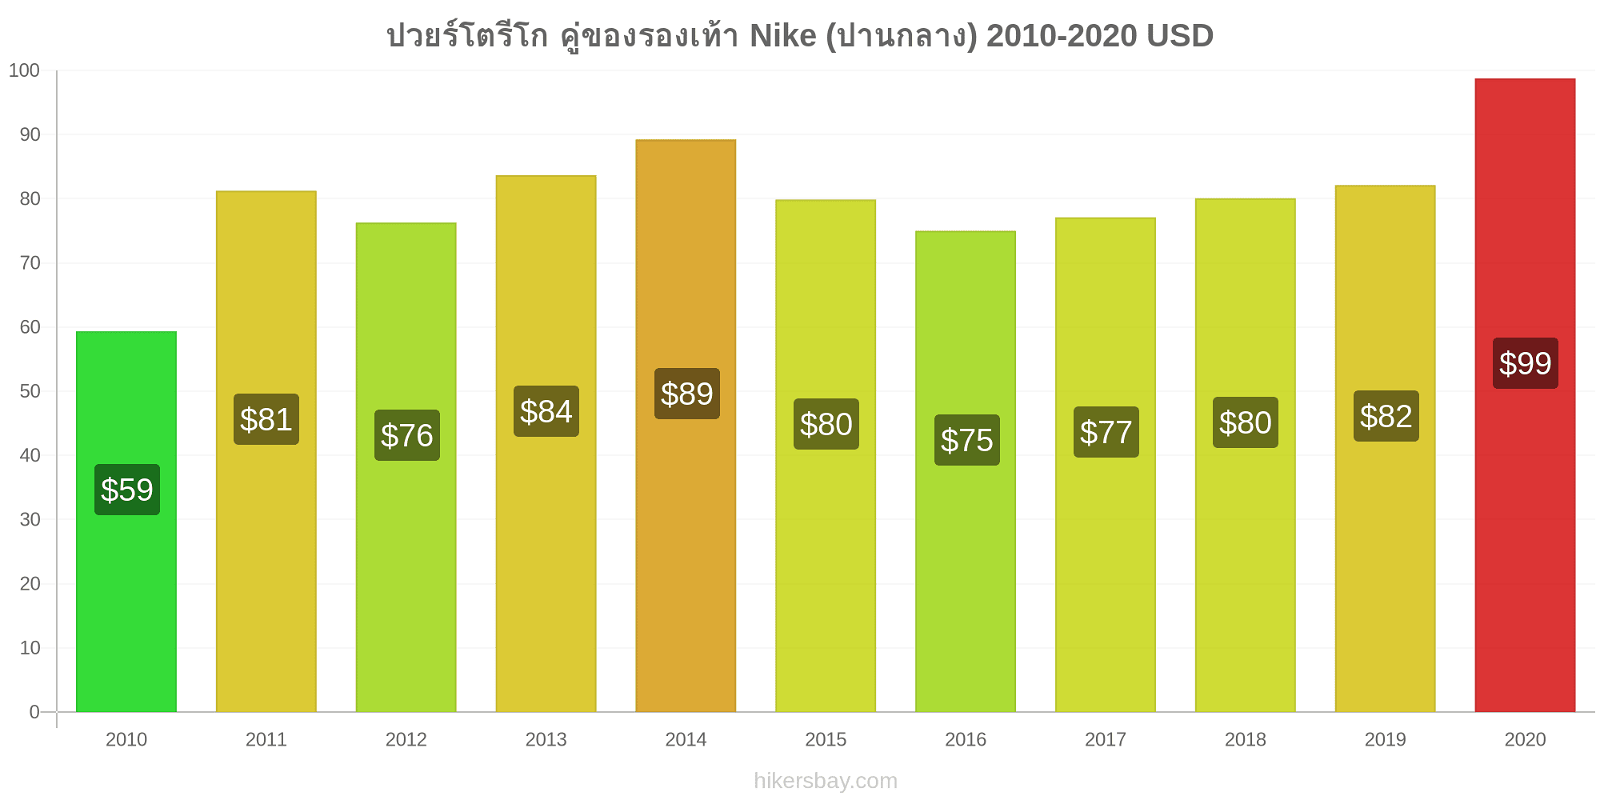 ปวยร์โตรีโก การเปลี่ยนแปลงราคา คู่ของรองเท้า Nike (ปานกลาง) hikersbay.com